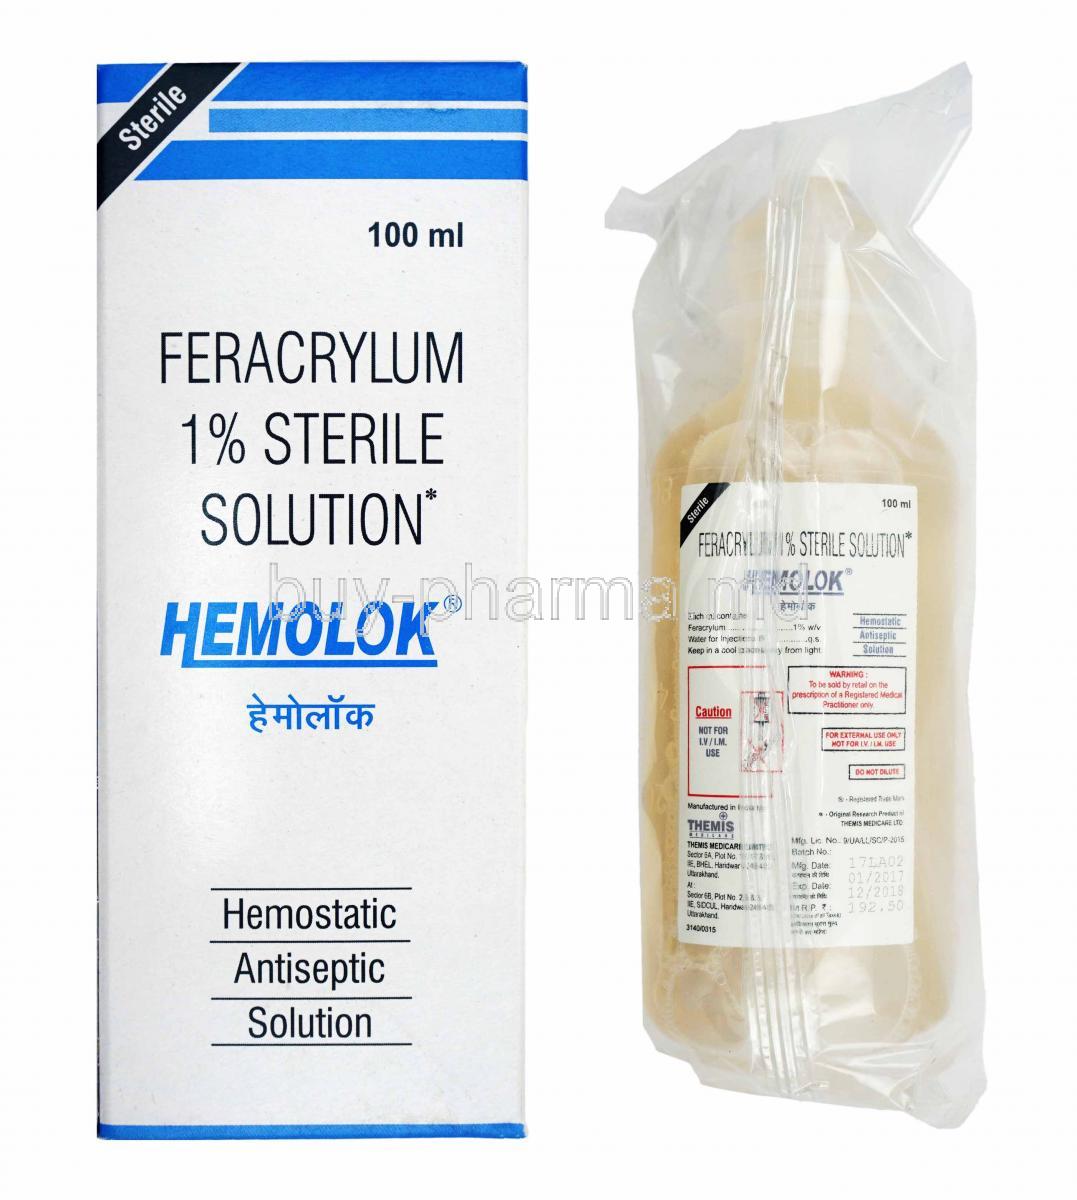 Hemolok Sterile Solution, Feracrylum box and bottle